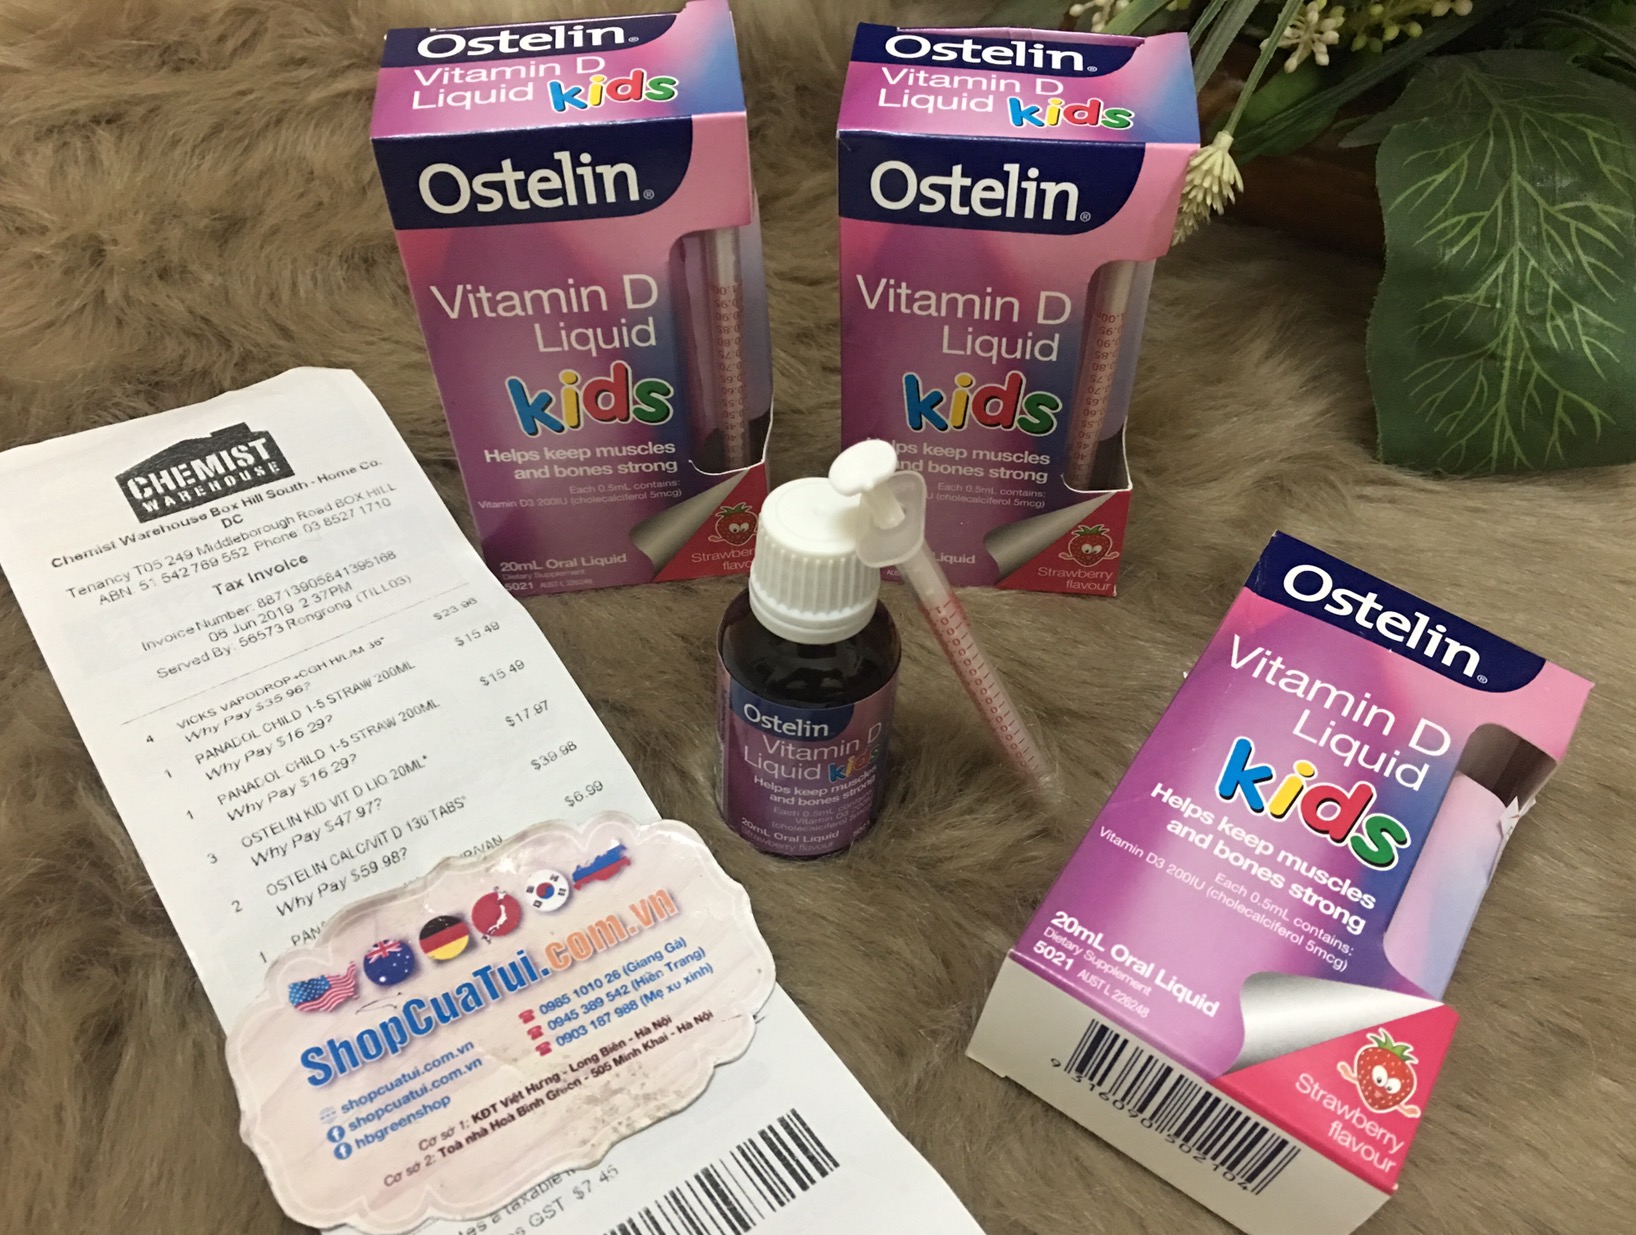 Vitamin D Ostelin dạng nước (20ml) (0-12 tuổi) thơm ngon và hiệu quả cho bé yêu, giúp trẻ hạn chế rụng tóc vành khăn, hay giật mình - đổ mồ hôi trộm khi ngủ, khóc đêm